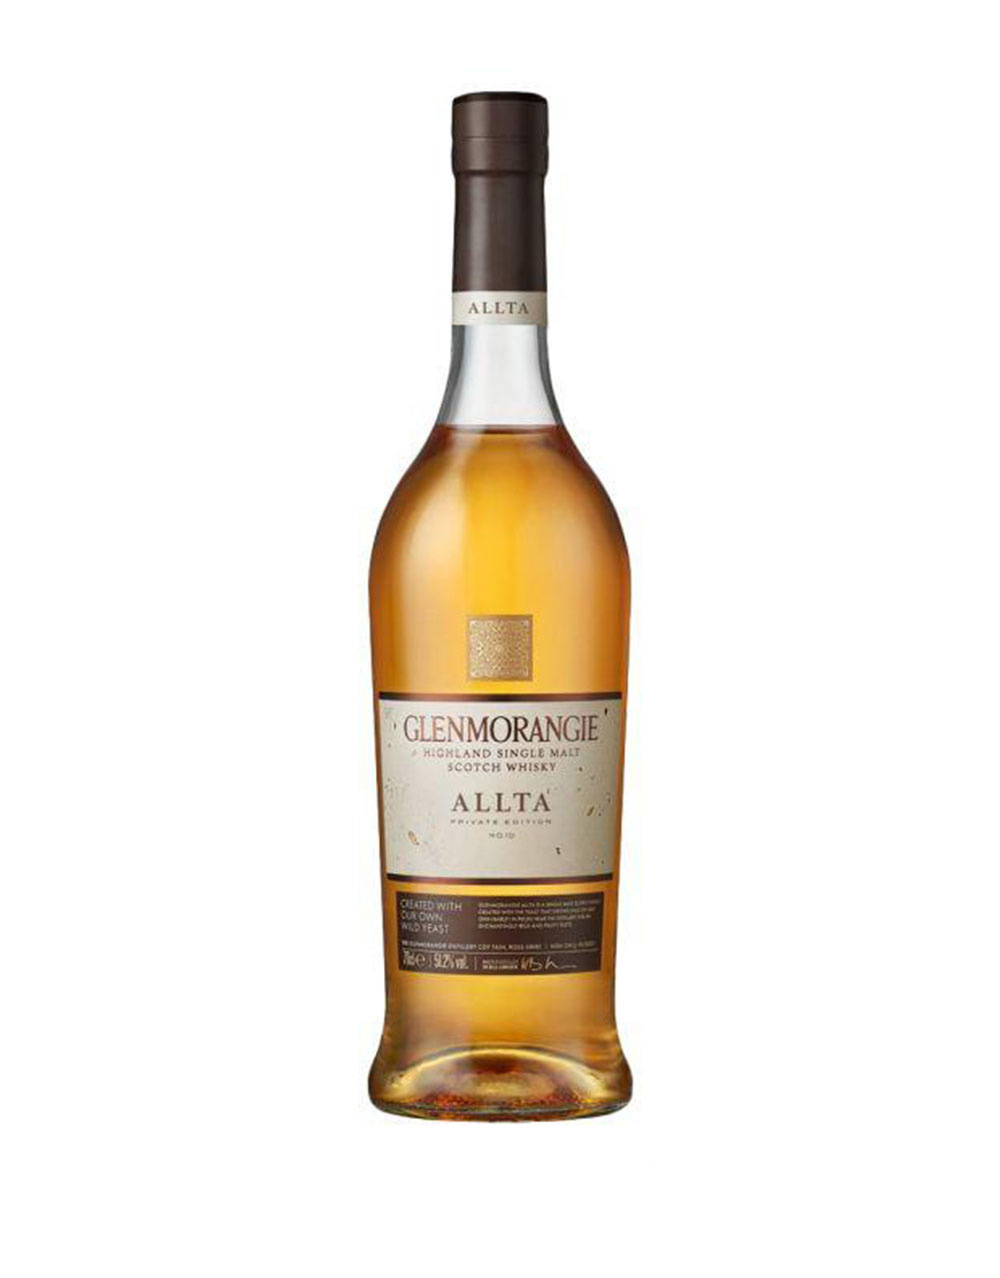 Glenmorangie Allta Single Malt Scotch Whiskey